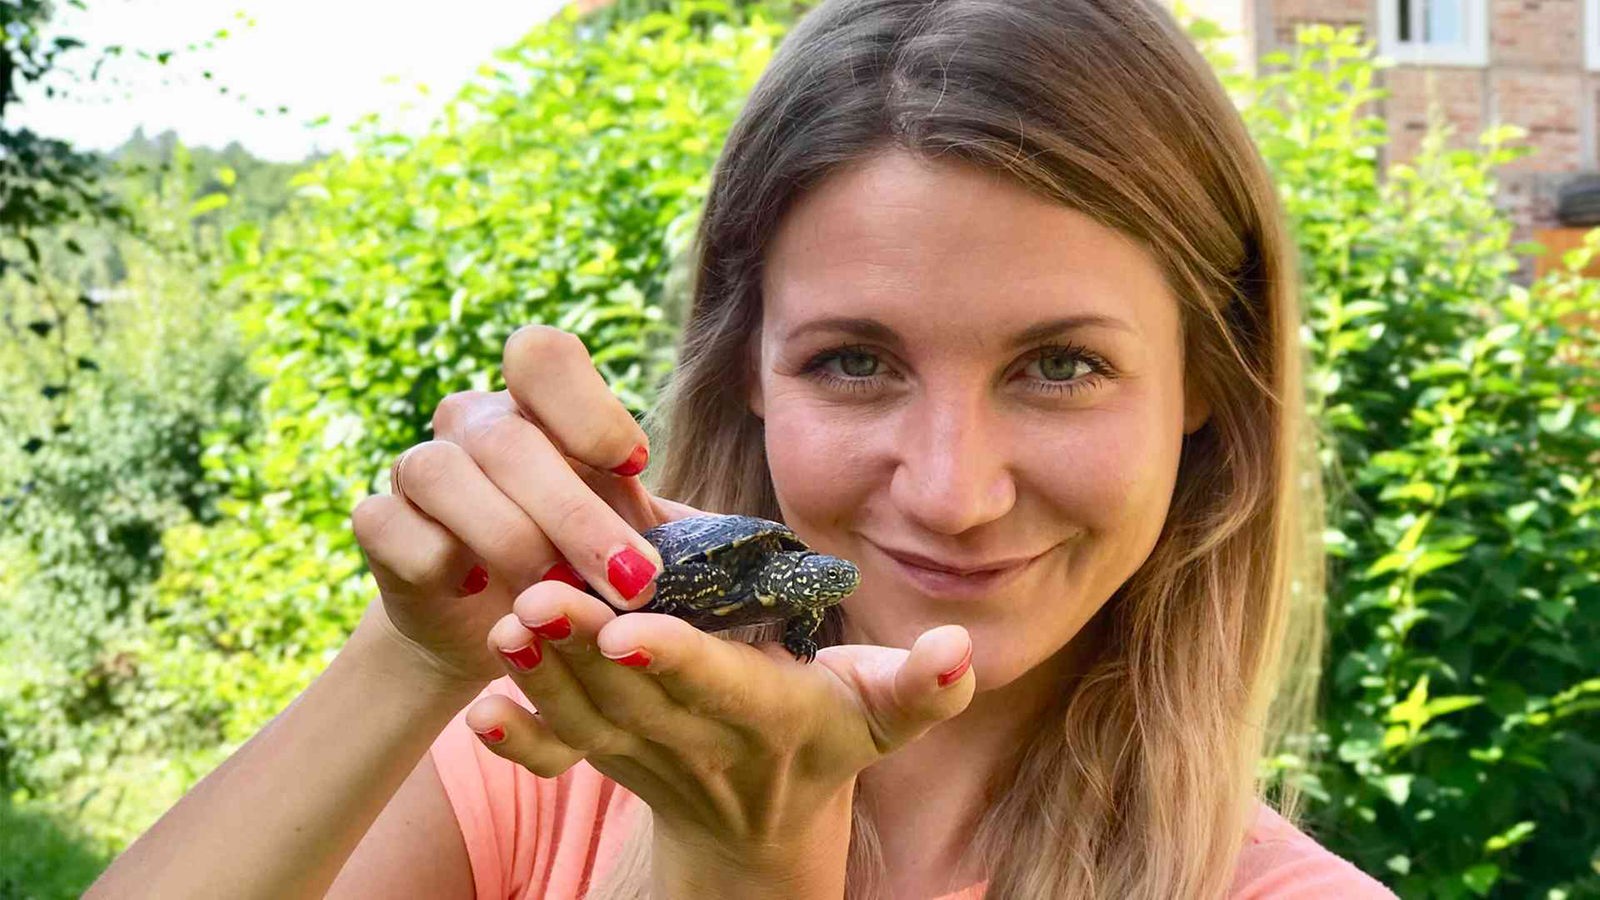 Jana hält eine zwei Jahre alte Europäische Sumpfschildkröte auf der Hand / Jana hält eine junge Europäische Sumpfschildkröte auf der Hand in die Kamera.